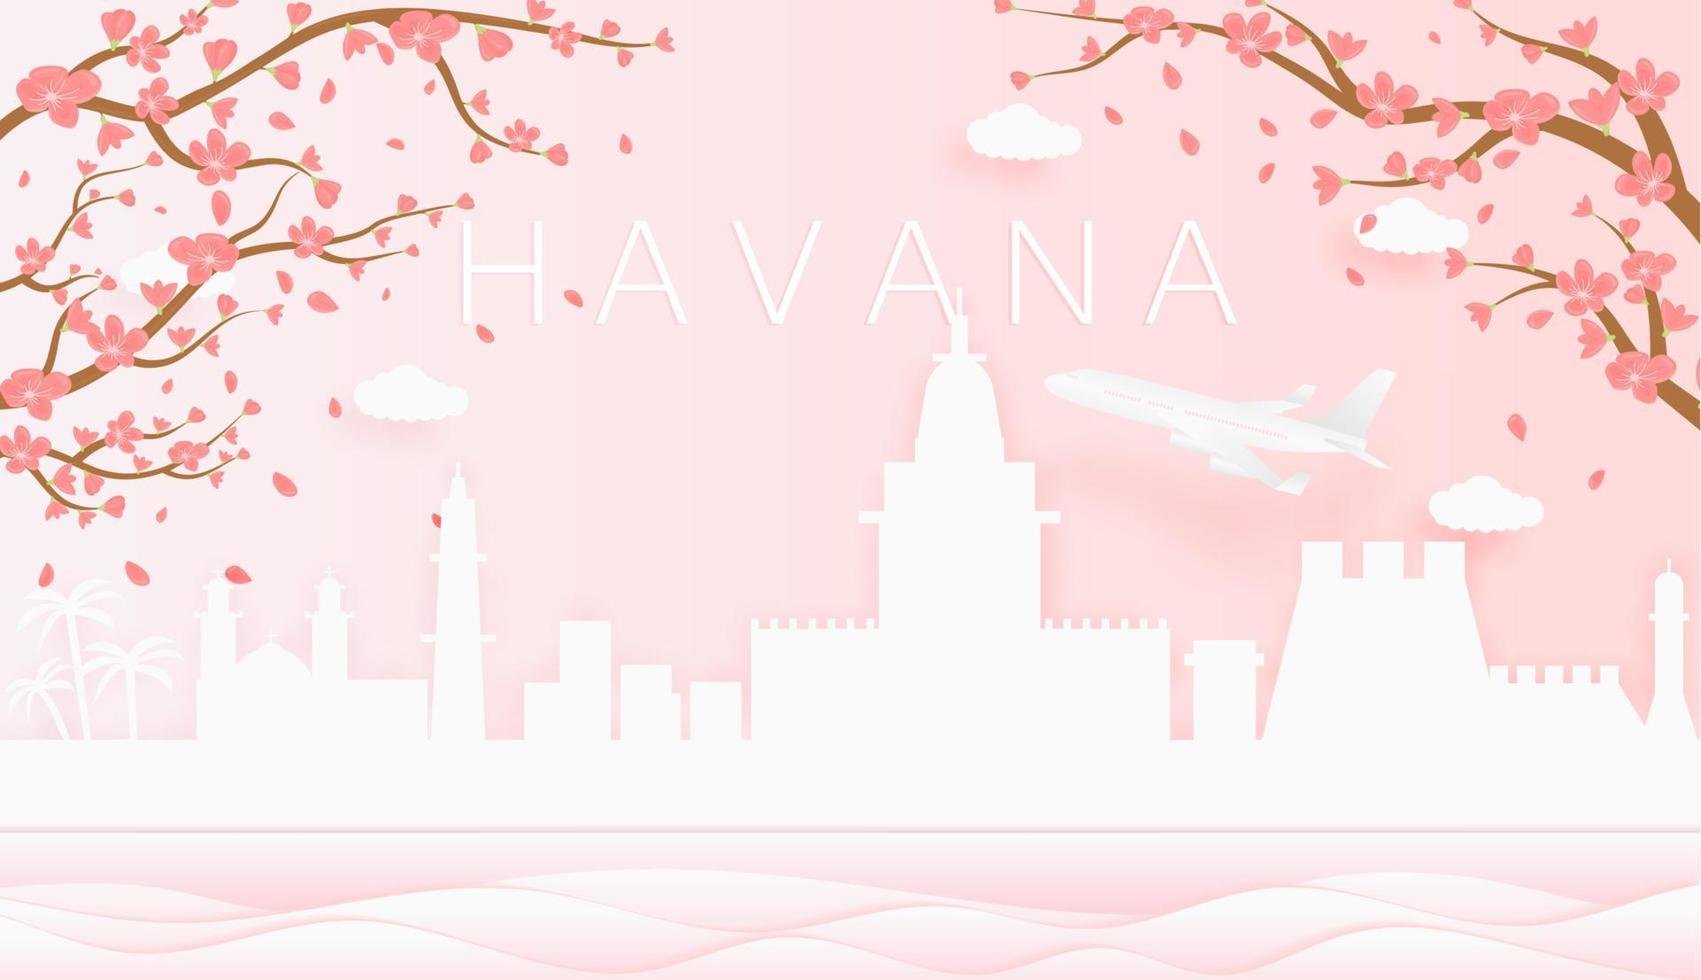 Panorama Reise Postkarte, Poster, Tour Werbung von Welt berühmt Sehenswürdigkeiten von Havanna, Frühling Jahreszeit mit Blühen Blumen im Baum vektor